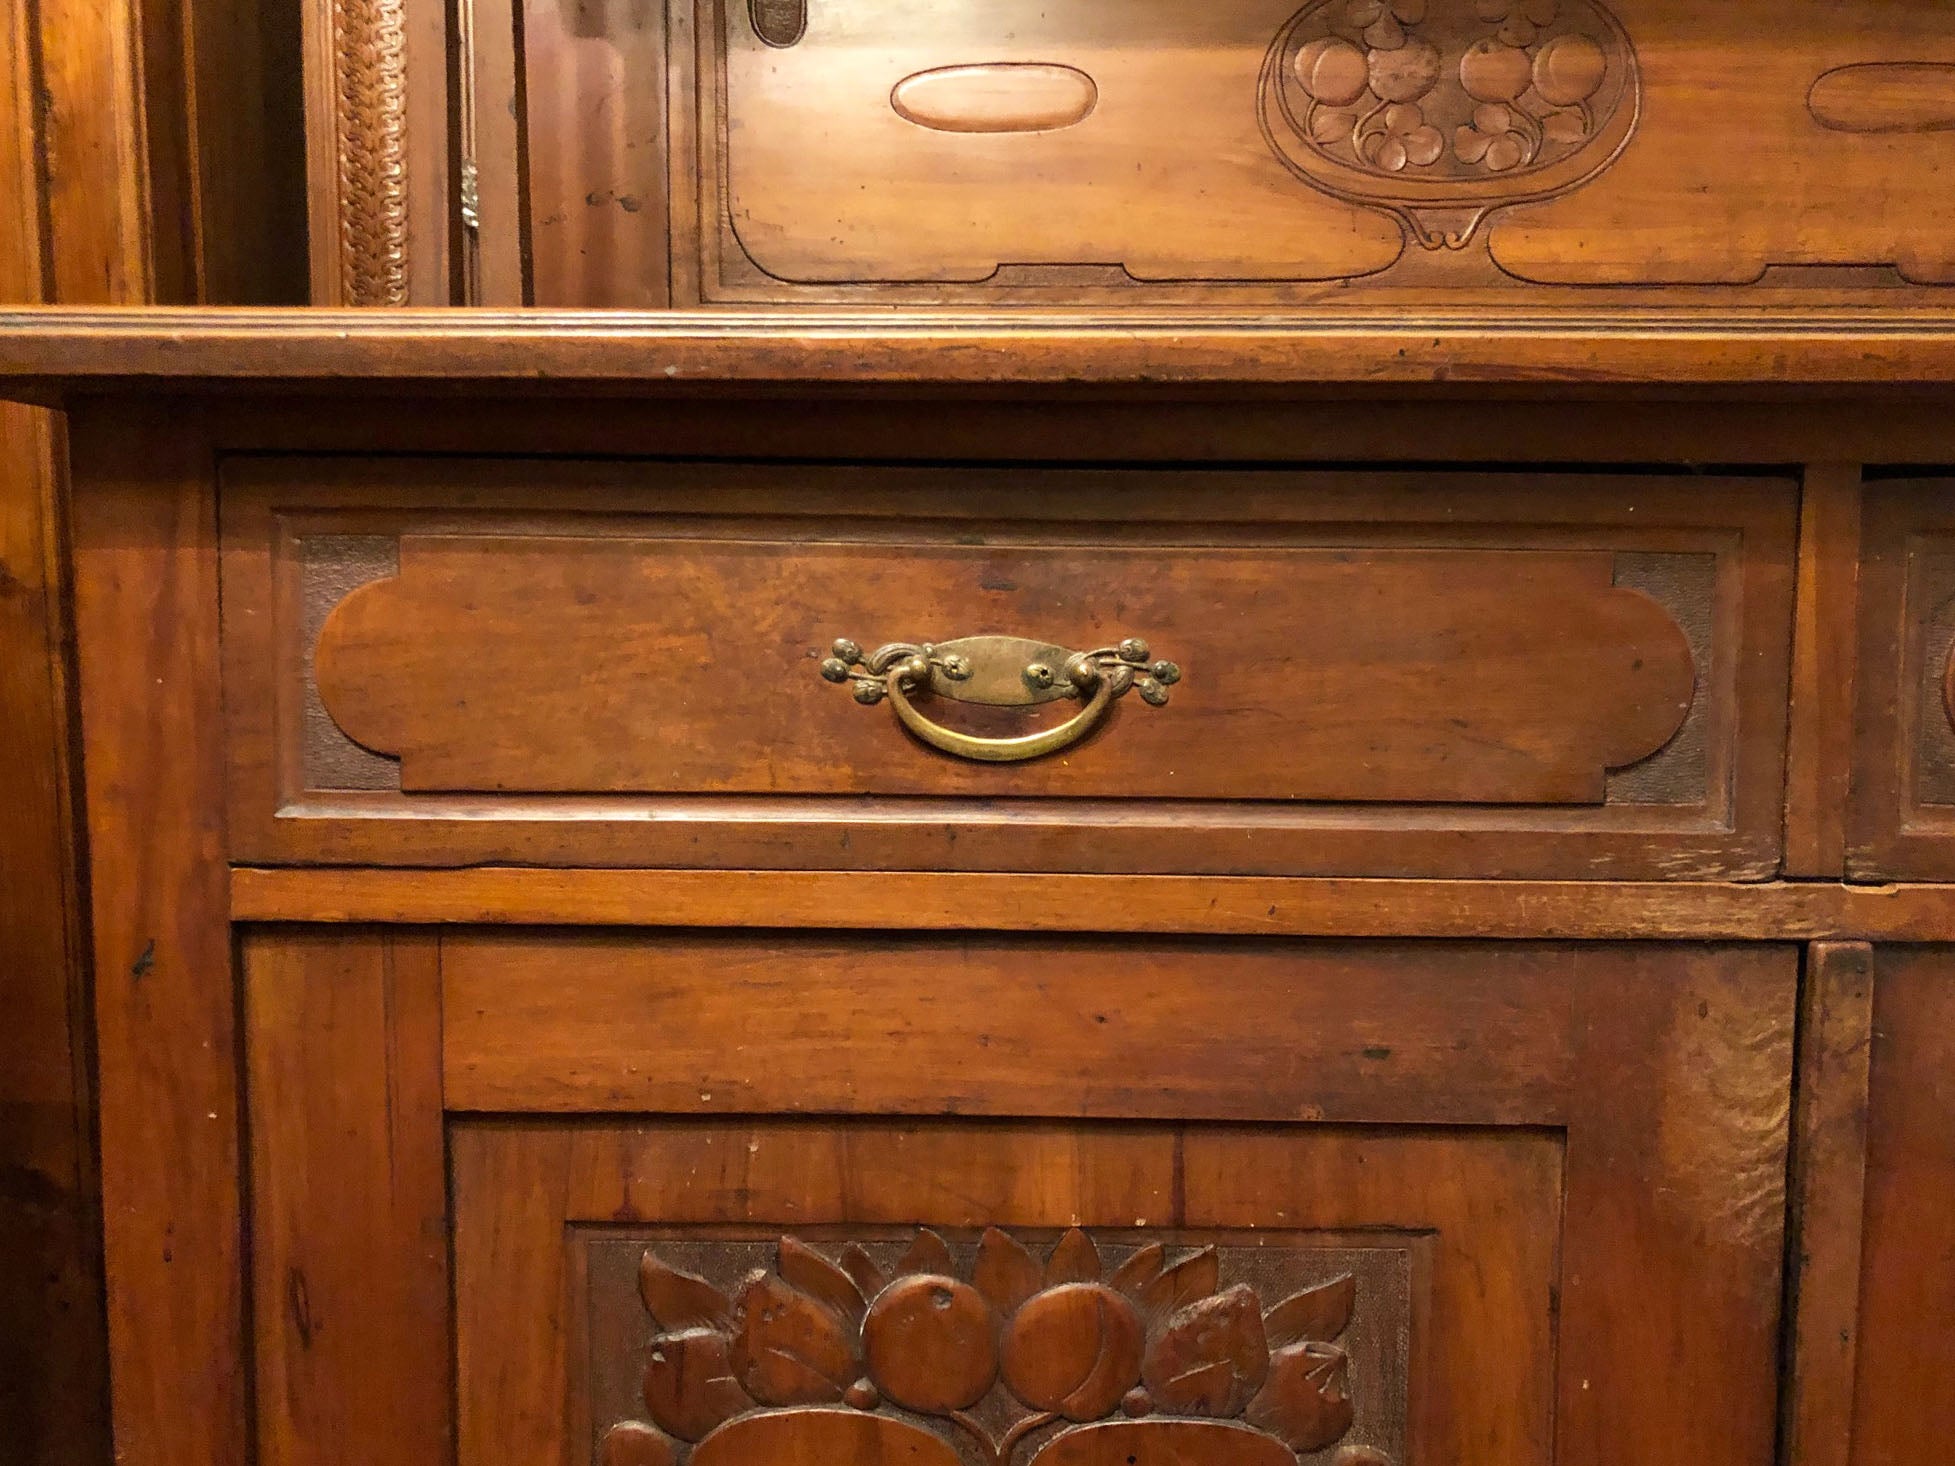 Guida alla manutenzione dei mobili antichi in legno: conservare la bellezza del passato